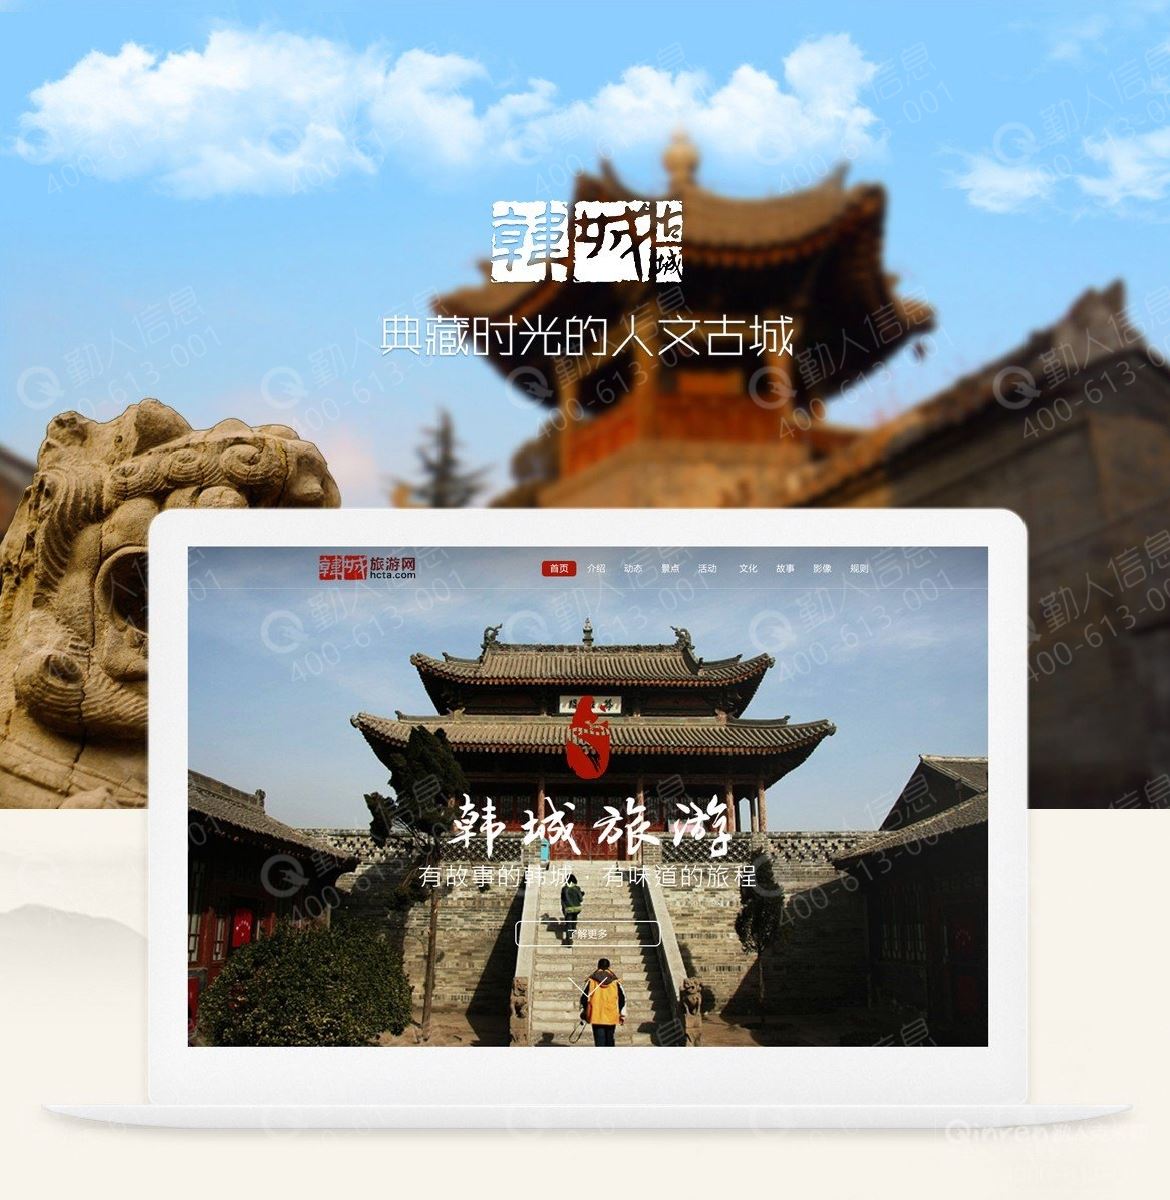 韩城旅游--旅游信息网站设计开发